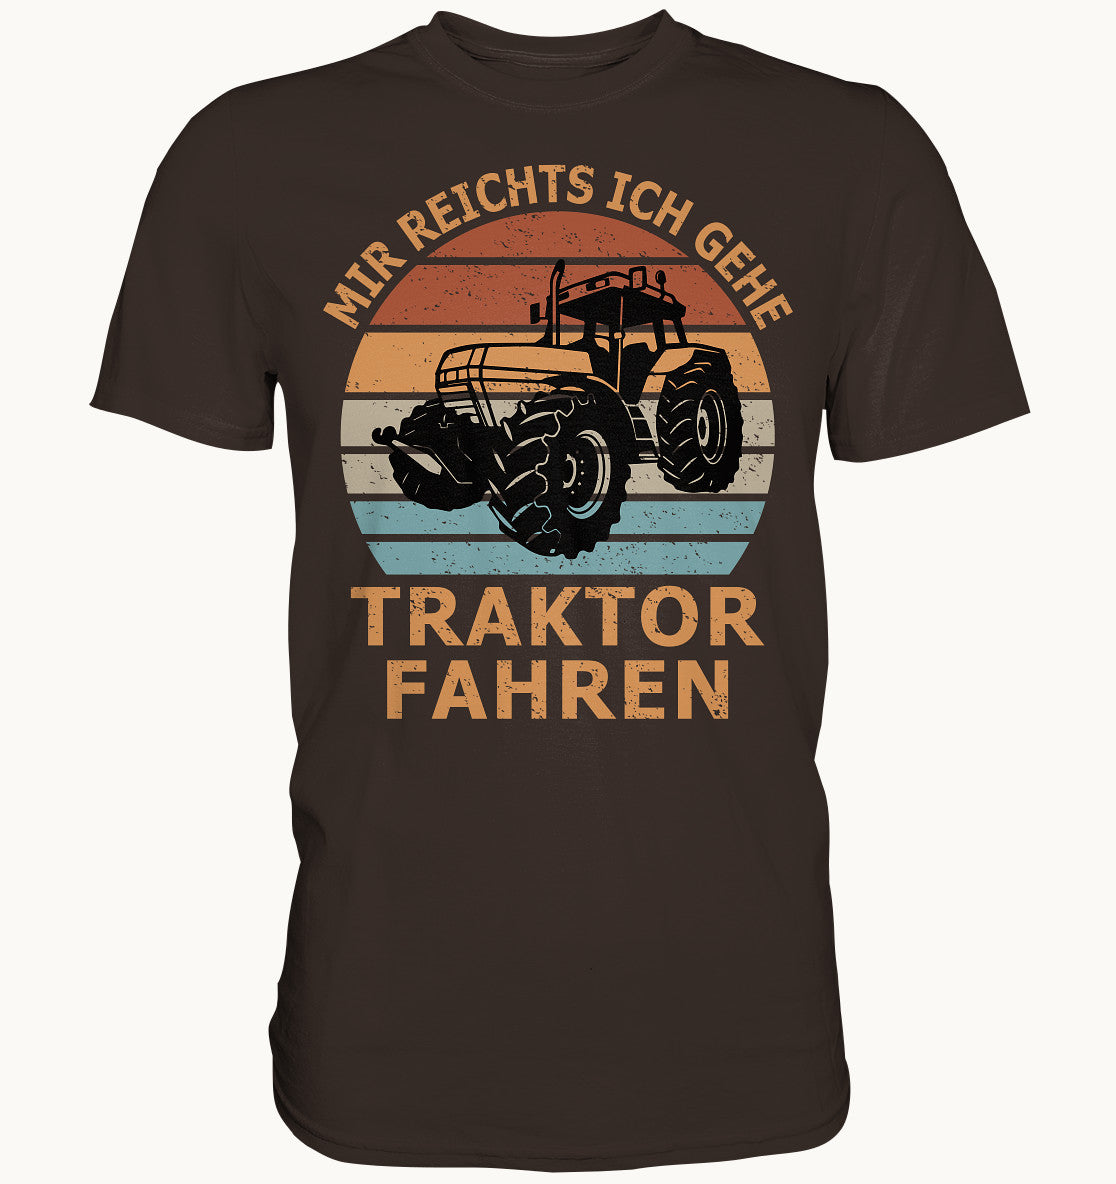 Mir reichts ich gehe Traktor fahren - Premium Shirt